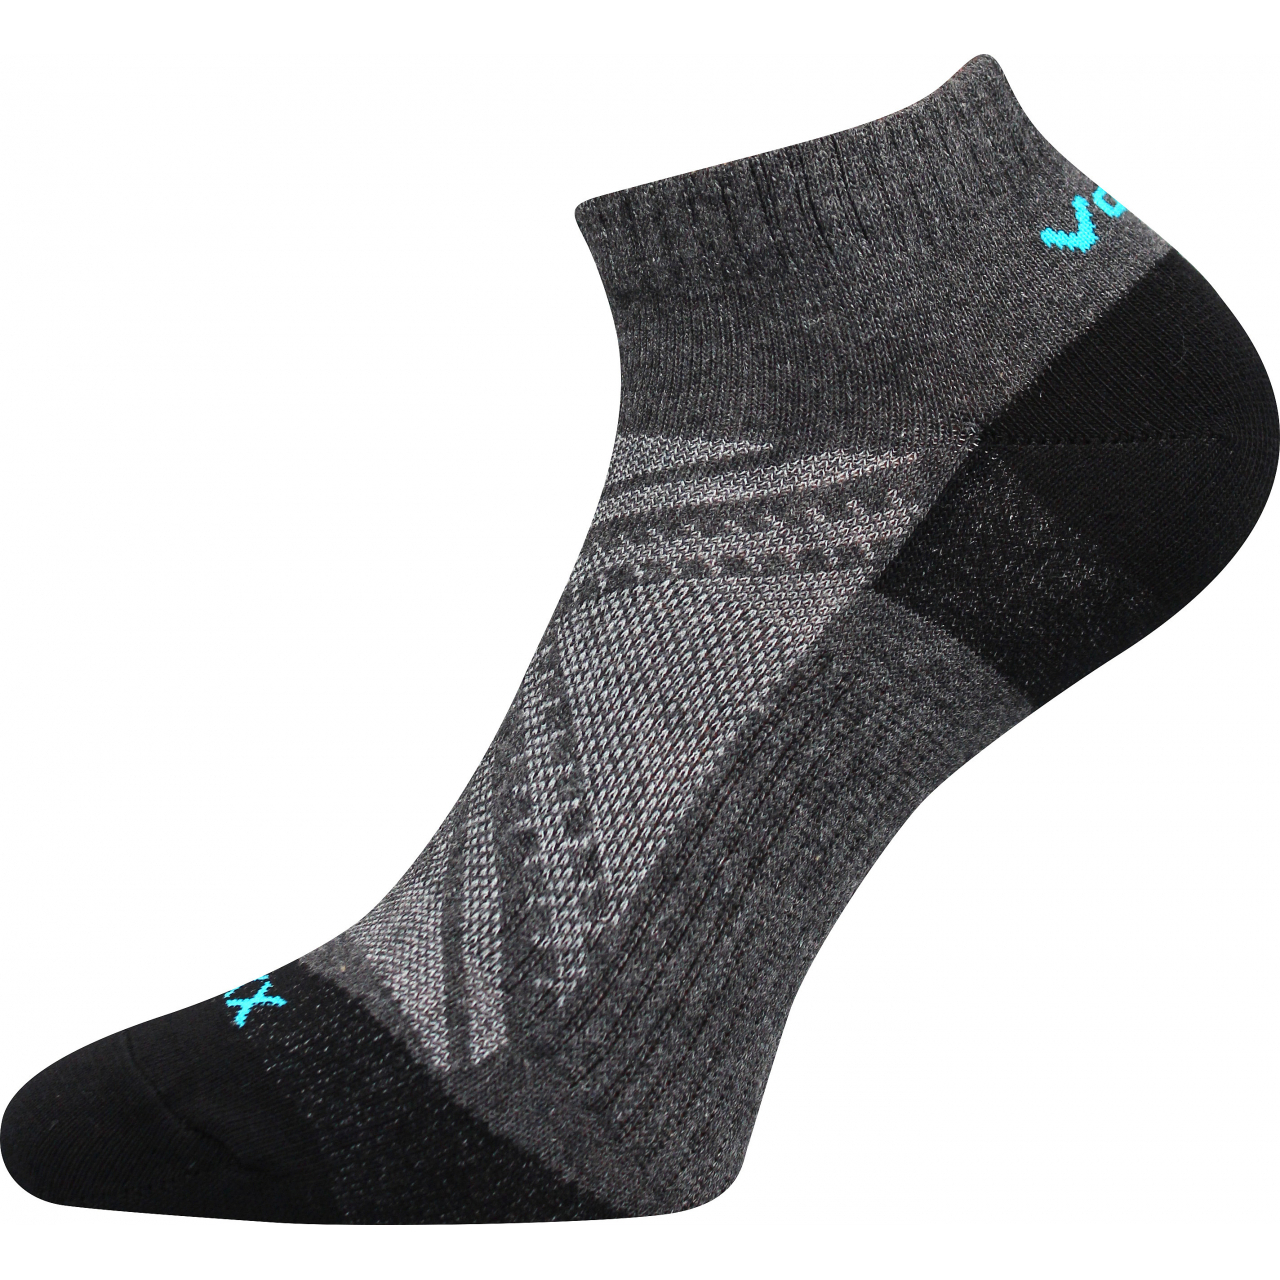 Ponožky slabé unisex Voxx Rex 15 - tmavě šedé, 43-46